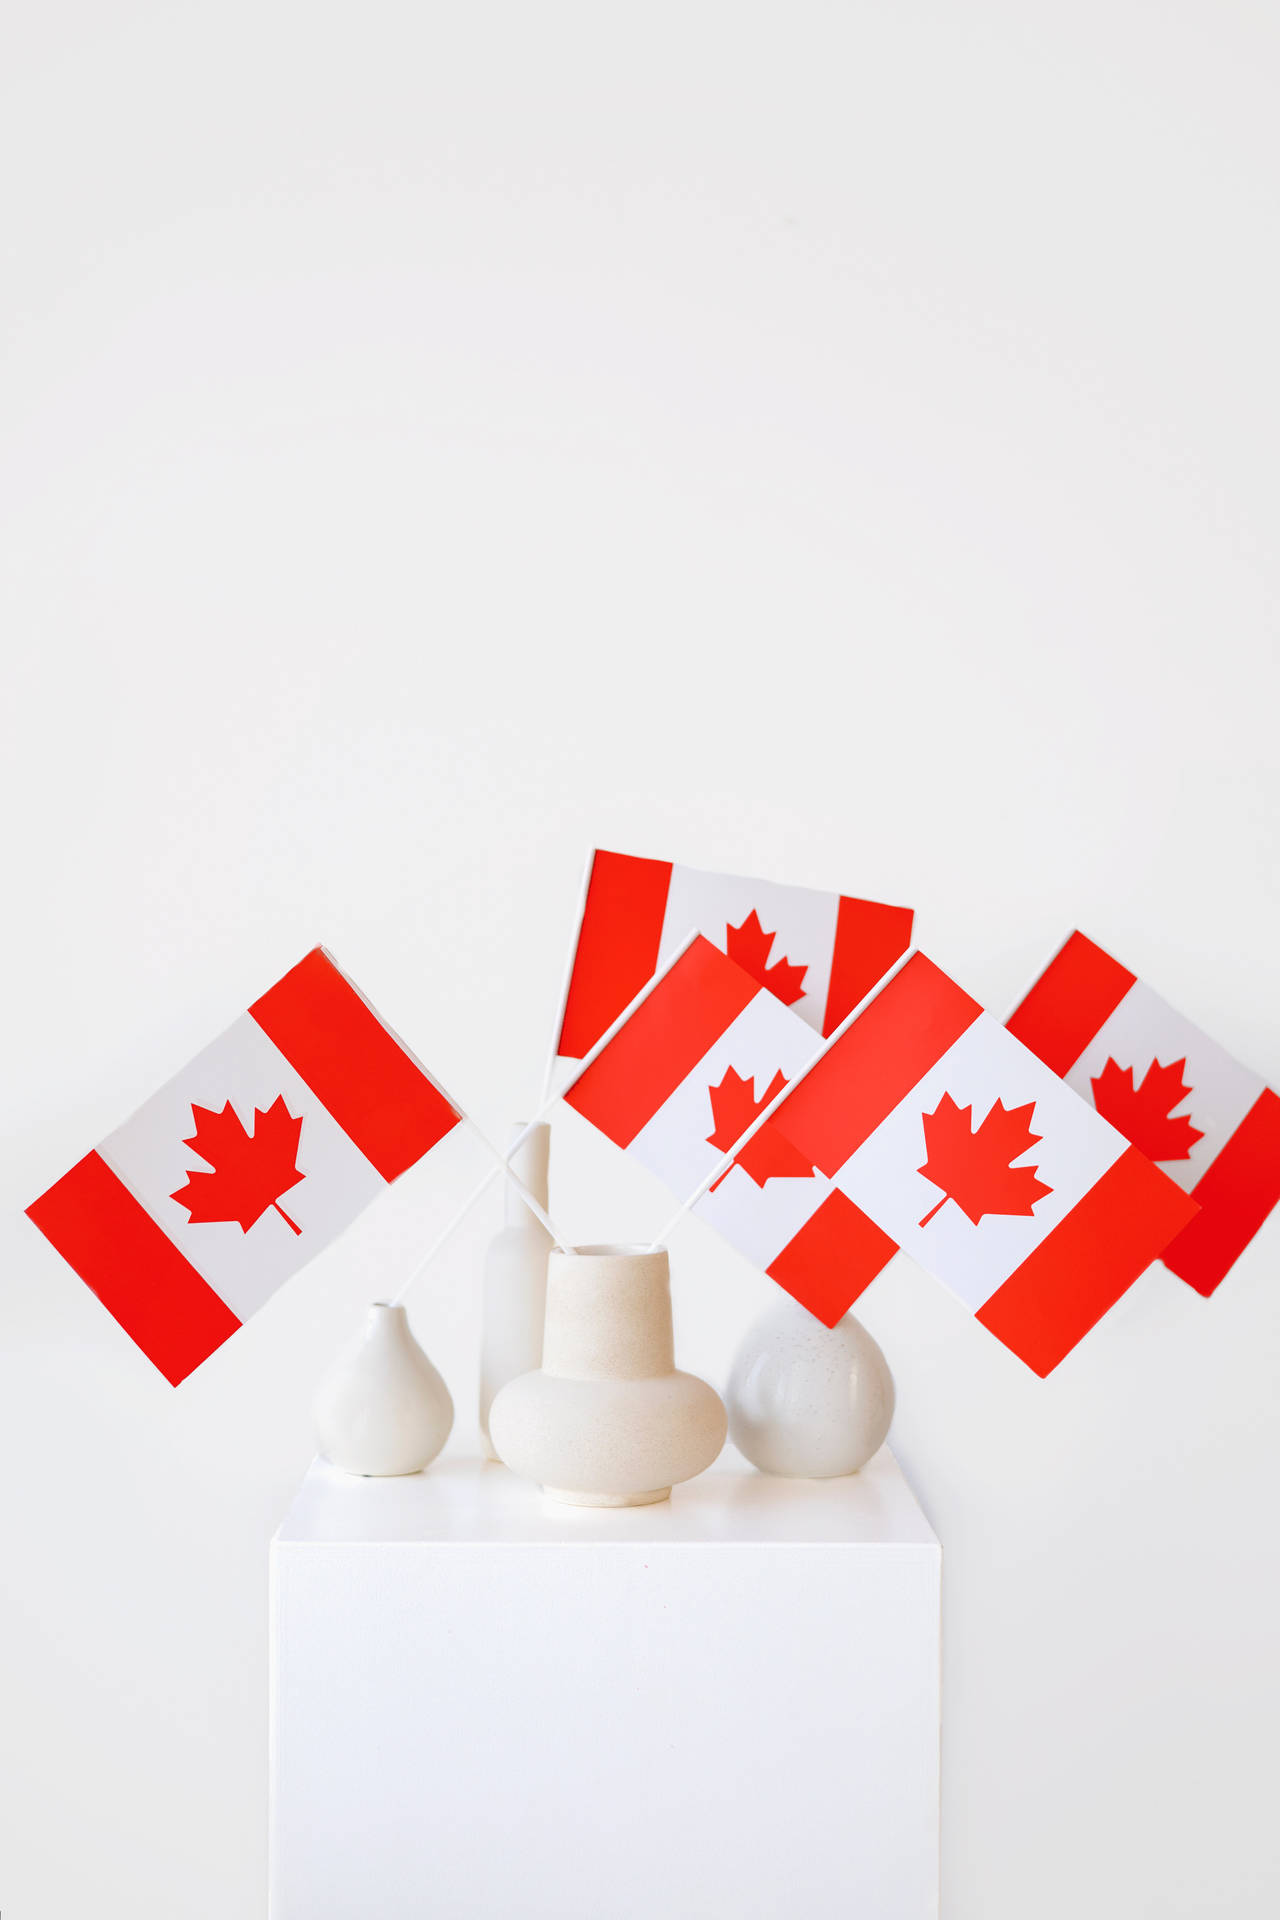 Kanadensiskaflaggor Inuti Vaser. Wallpaper